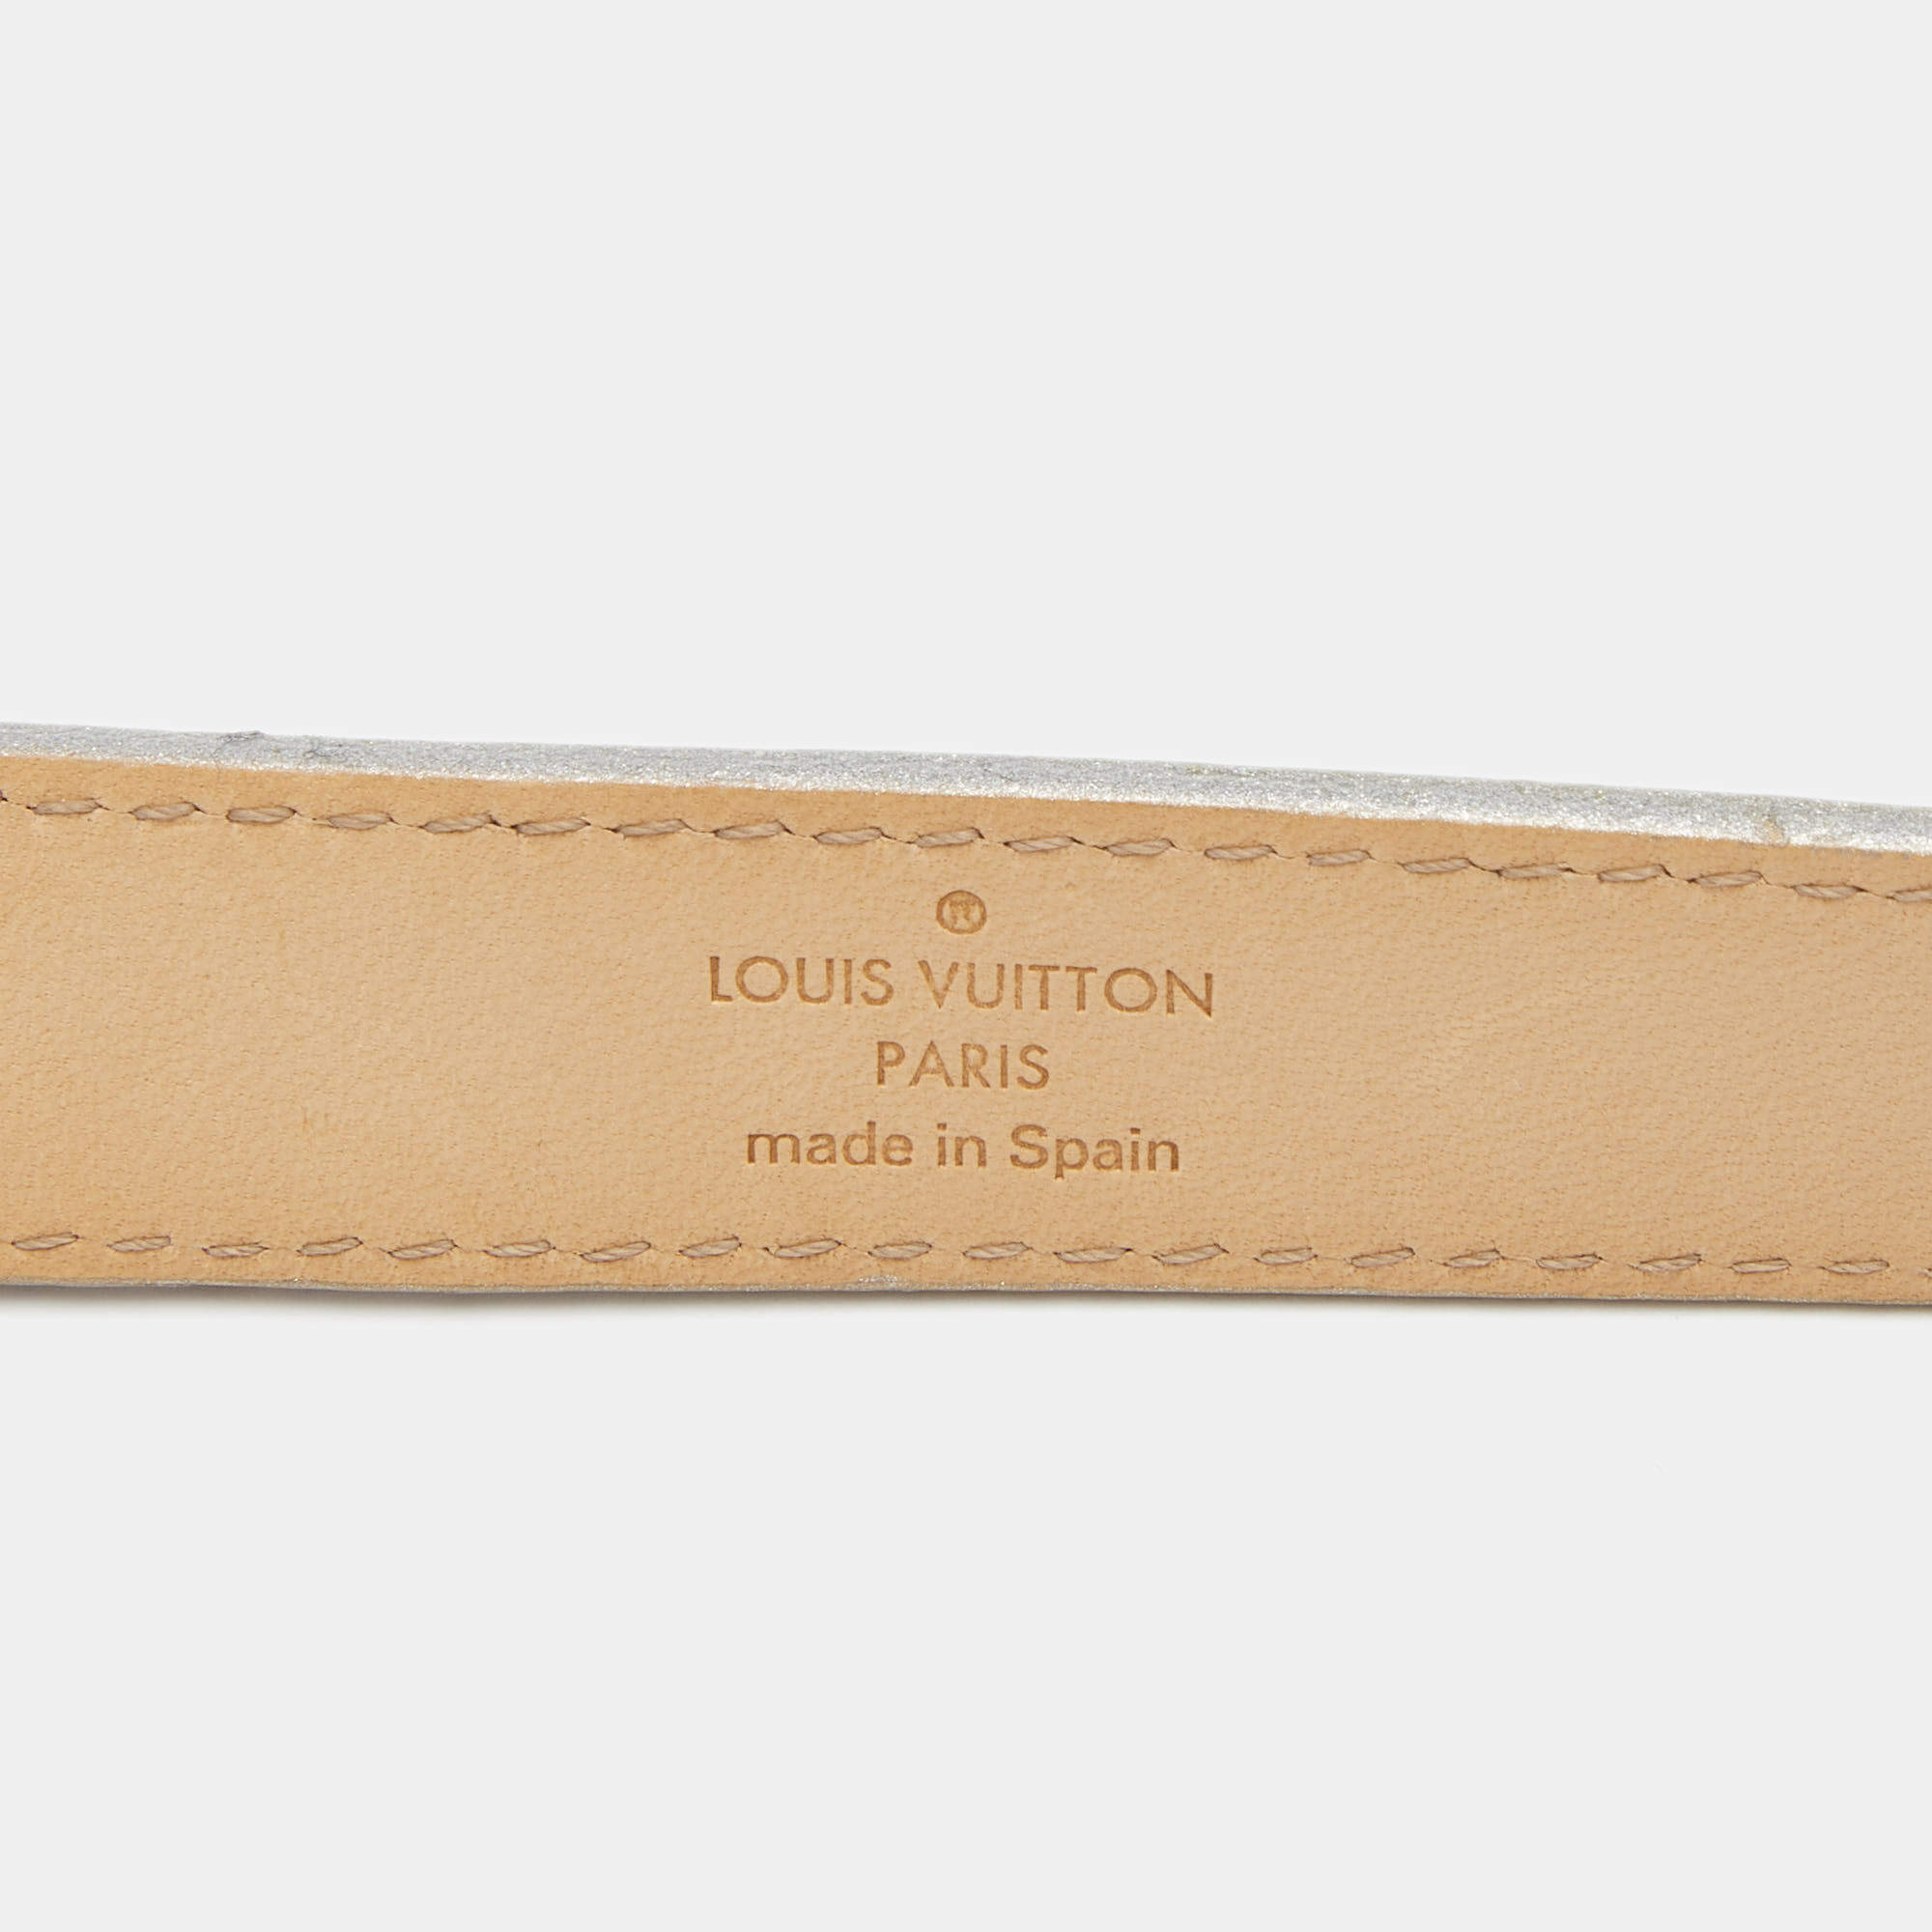 LOUIS VUITTON Leather Cursive Script Belt Silver - S: 80 (32)